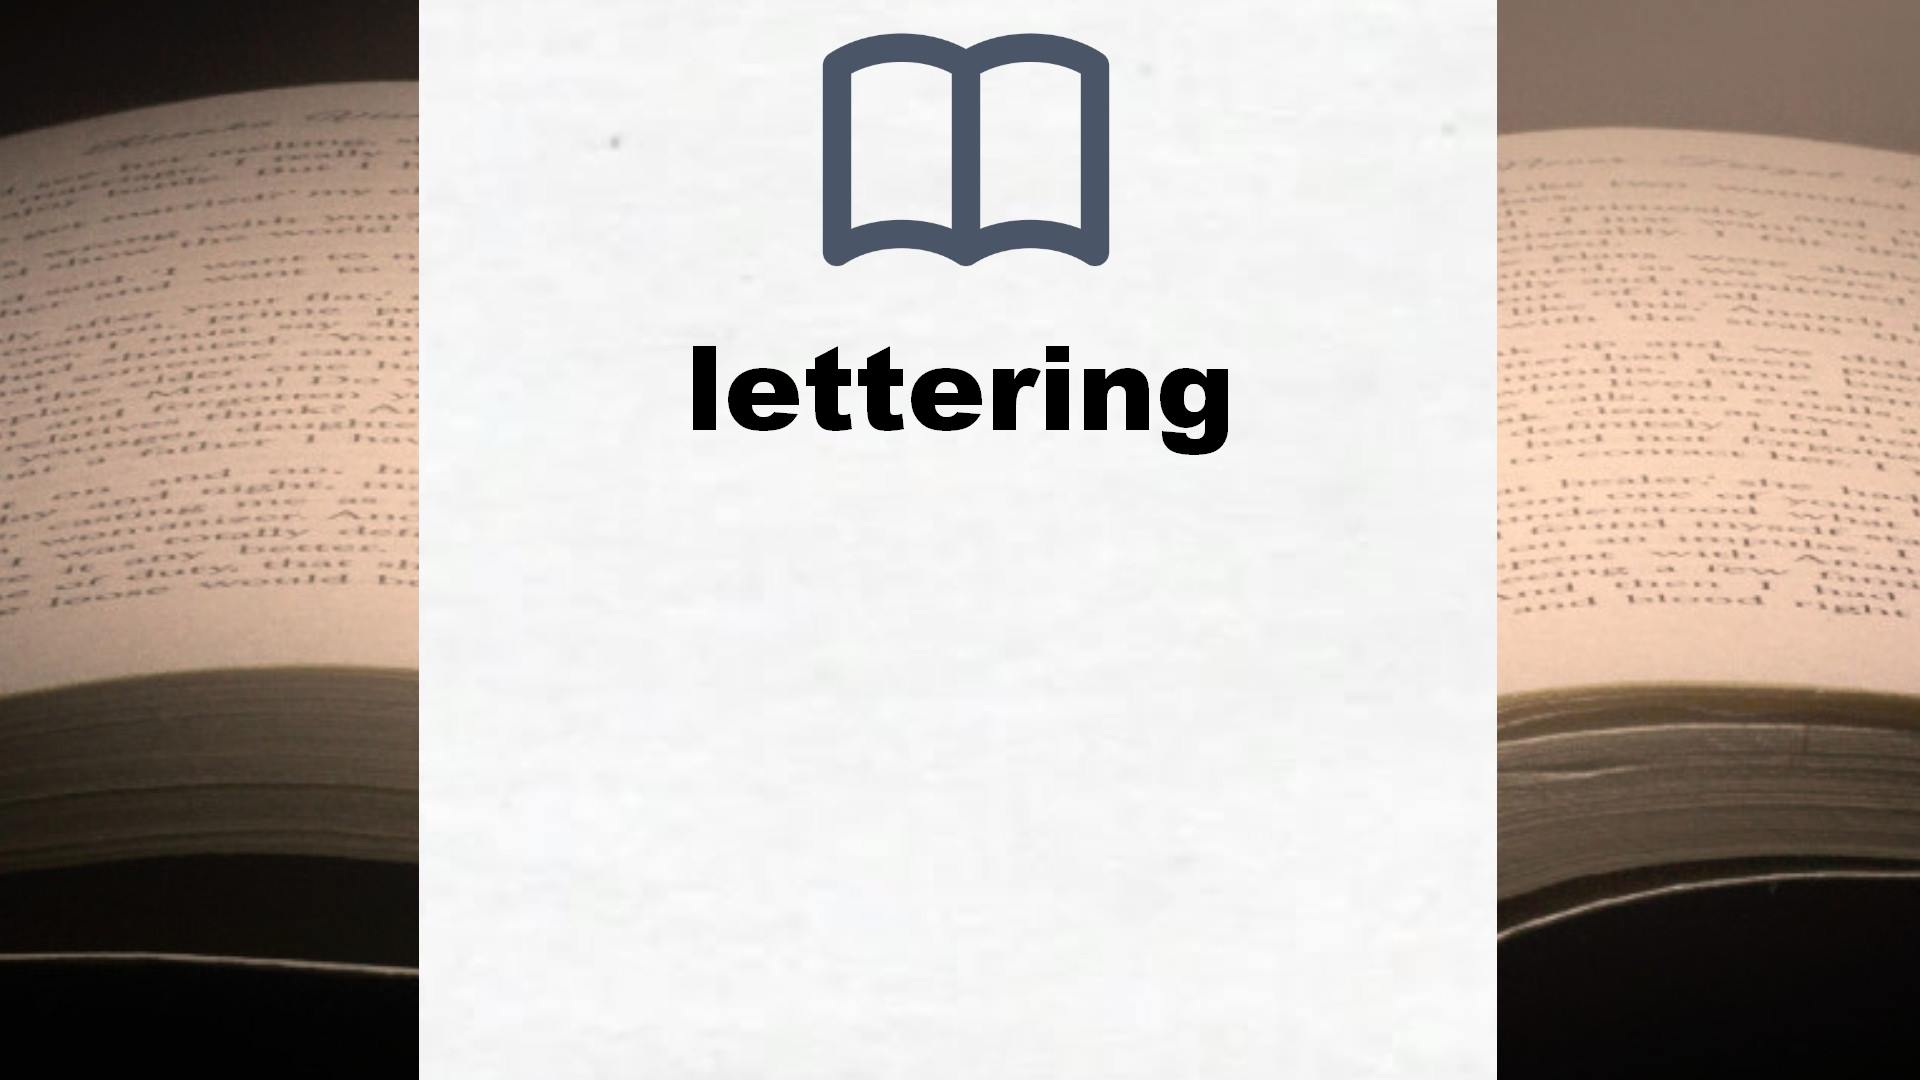 Libros sobre lettering